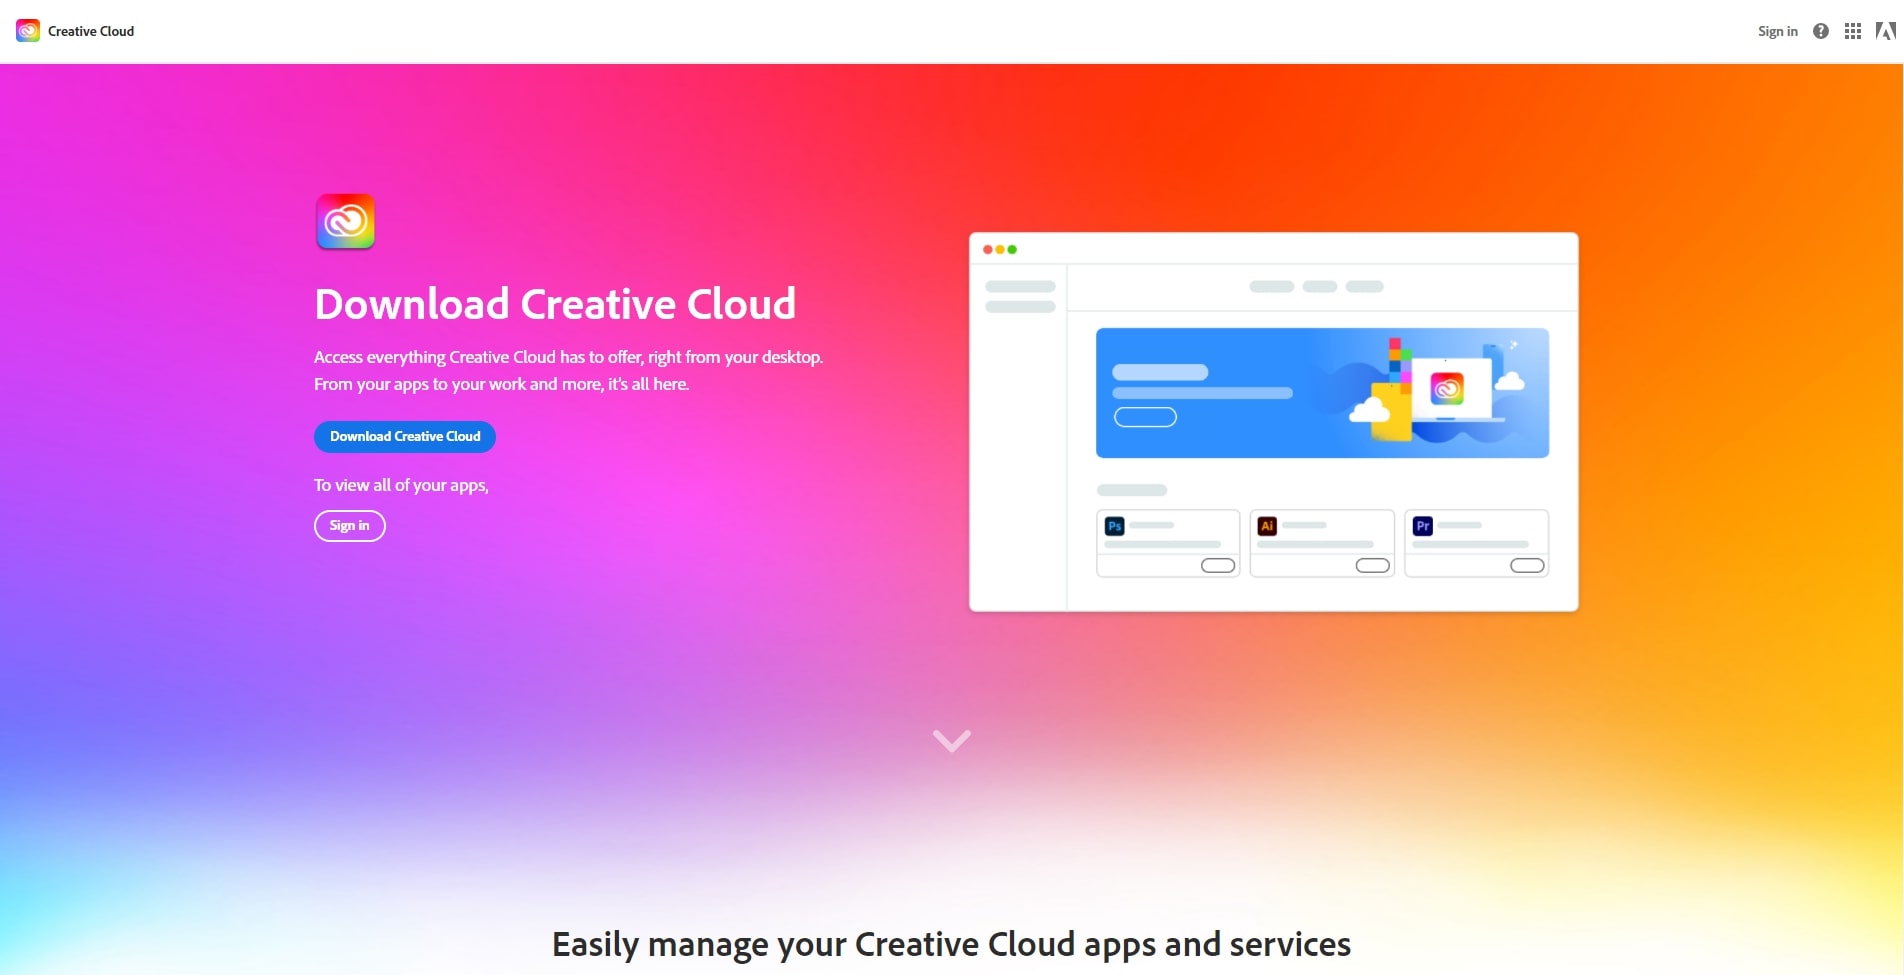 Design
Plugin
Creative Cloud
Adobe
Adobe XD